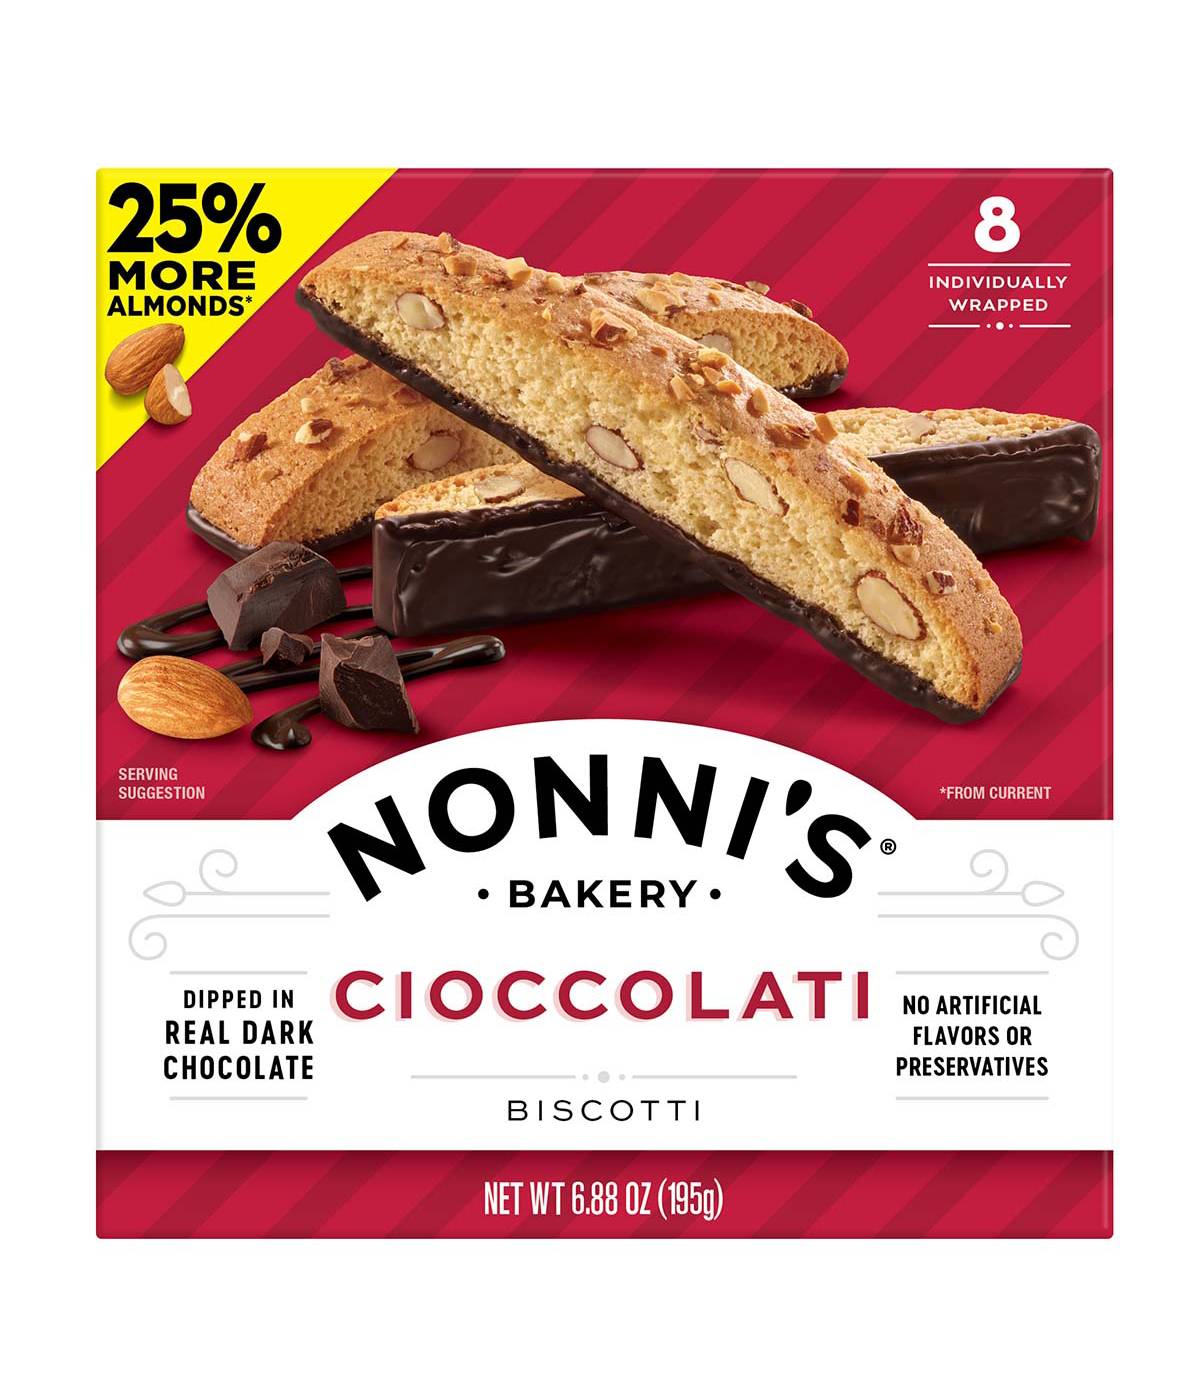 Nonni's Cioccolati Biscotti; image 1 of 3